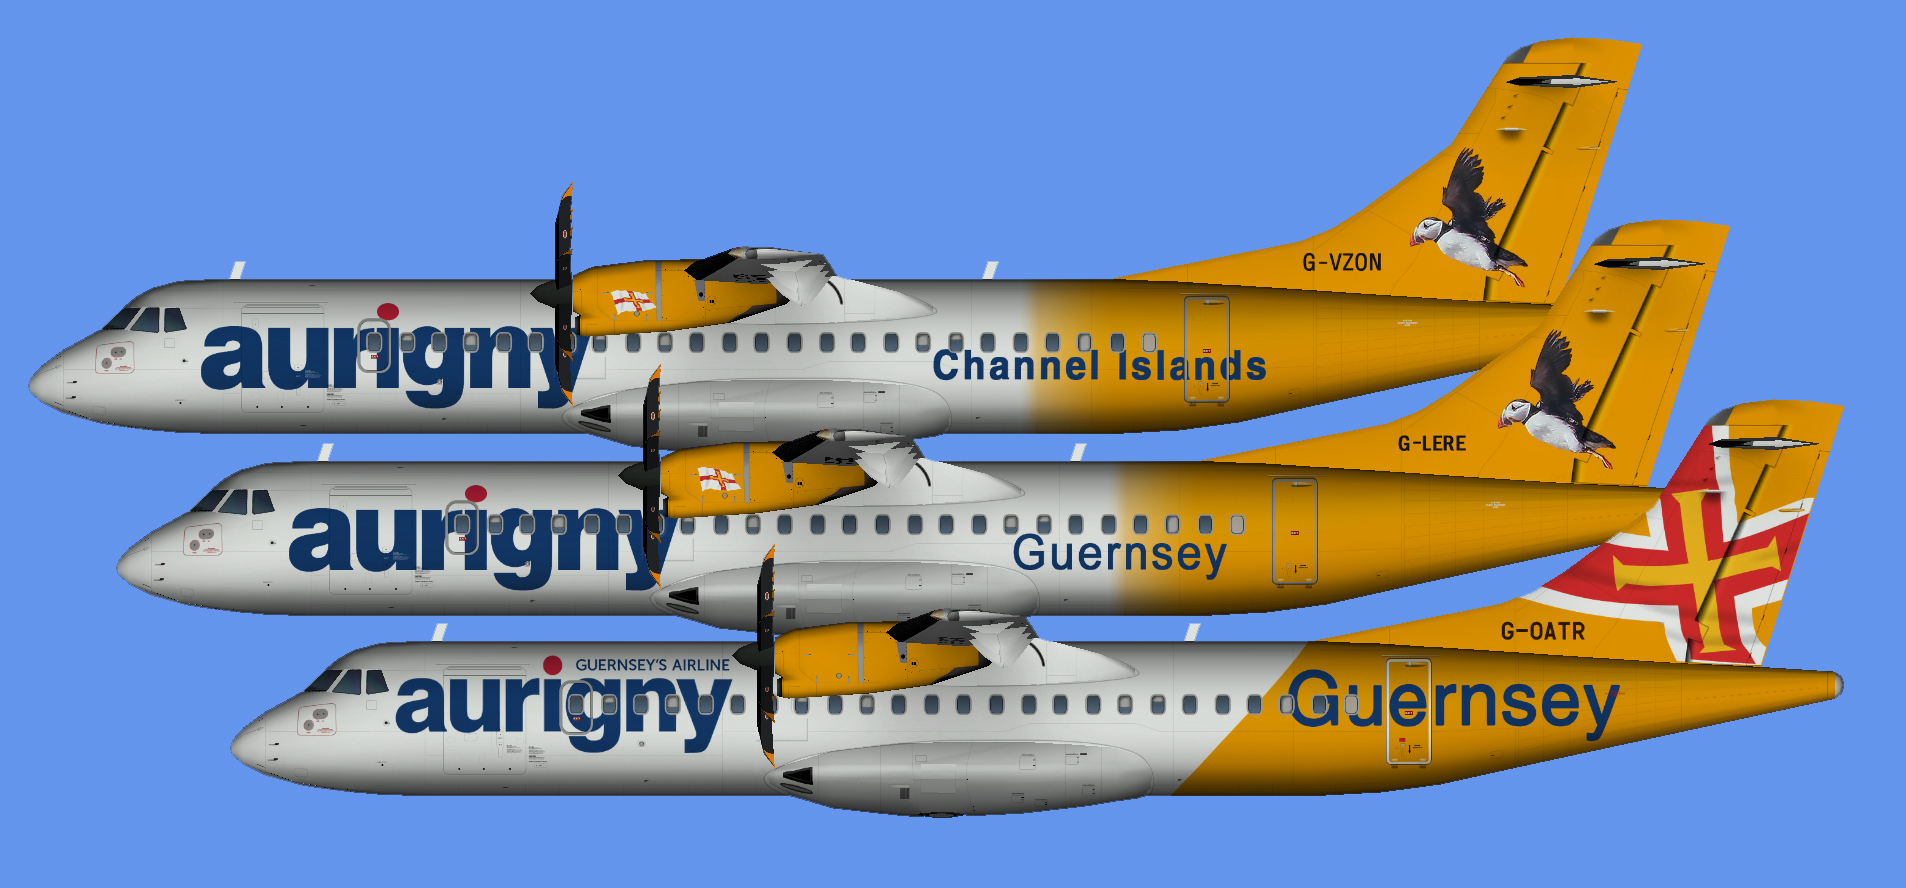 Aurigny ATR 72 fleet 2019